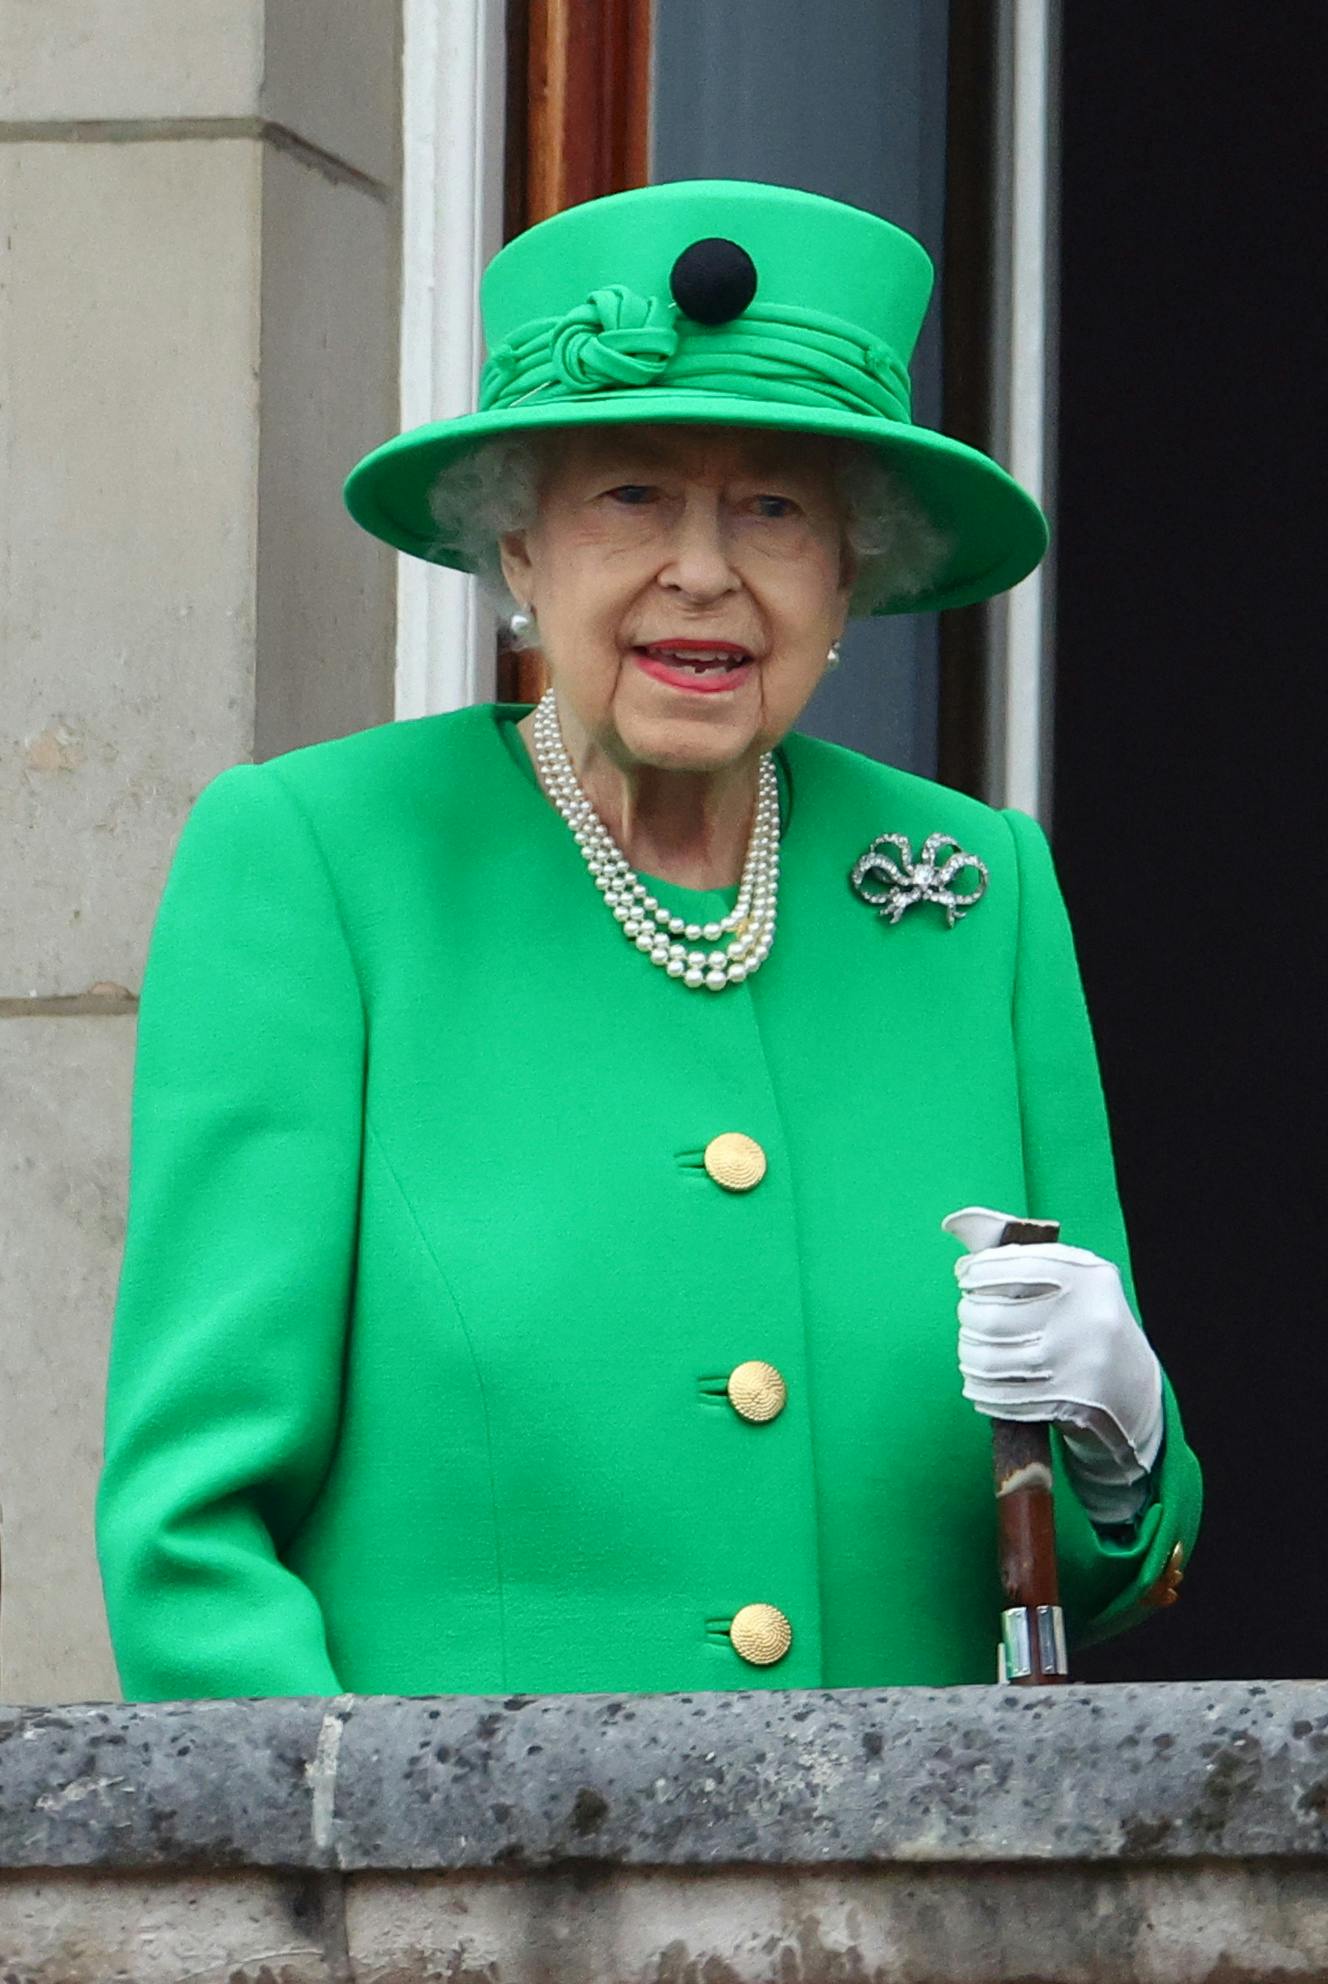 Søndag trådte 96-årige dronning Elizabeth frem på balkonen - til stor glæde for de tusindvis af fremmødte.
